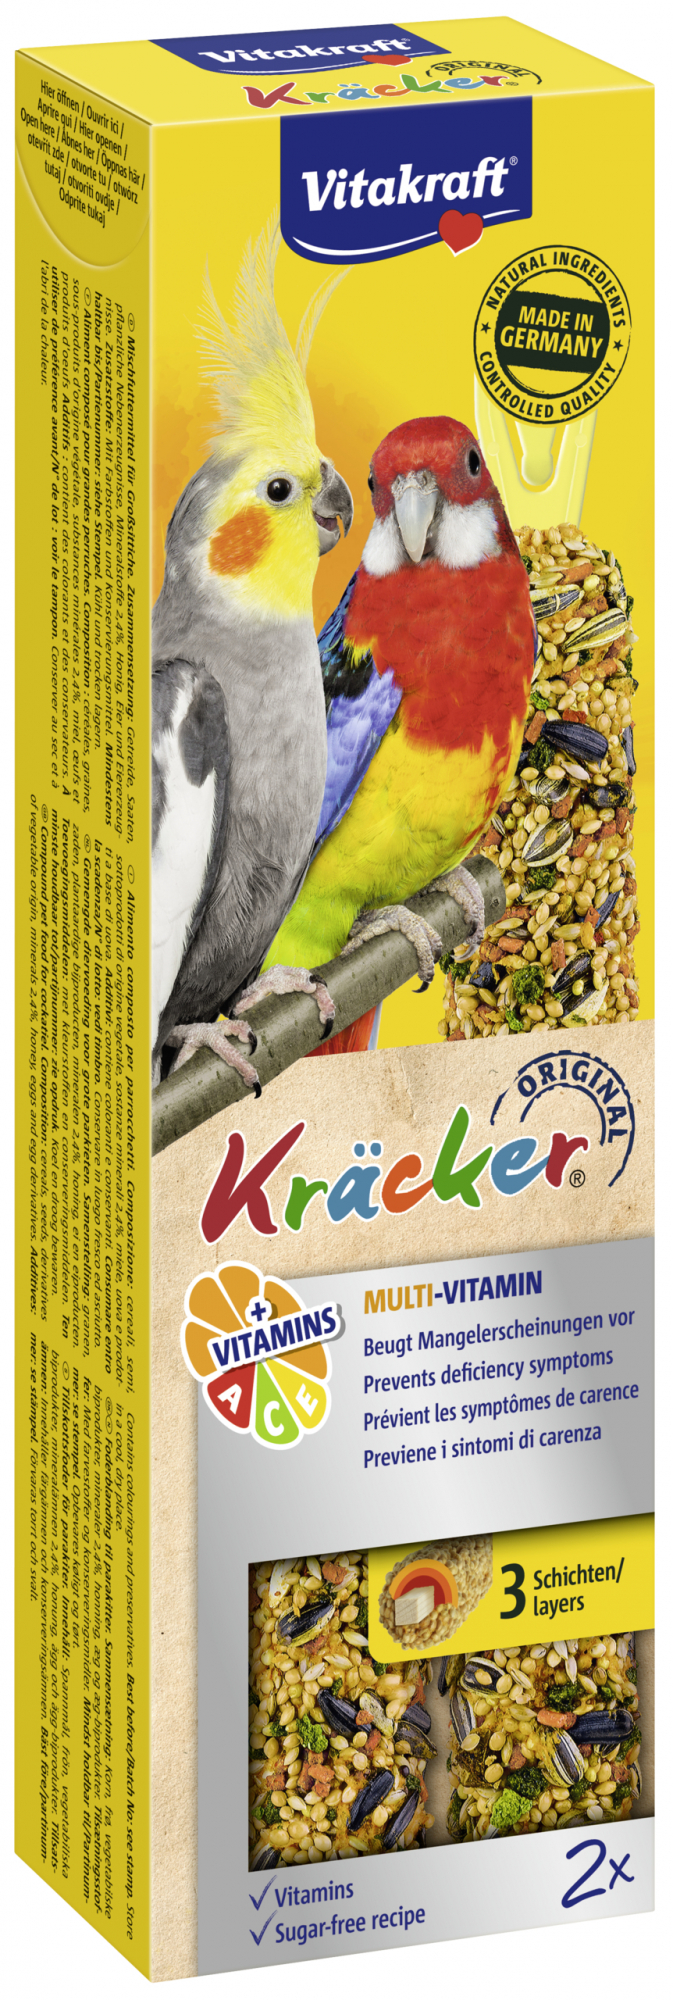 VITAKRAFT Kräcker Multi-Vitamin - Leckerbissen für Großsittiche – Box mit 2 Kräckern